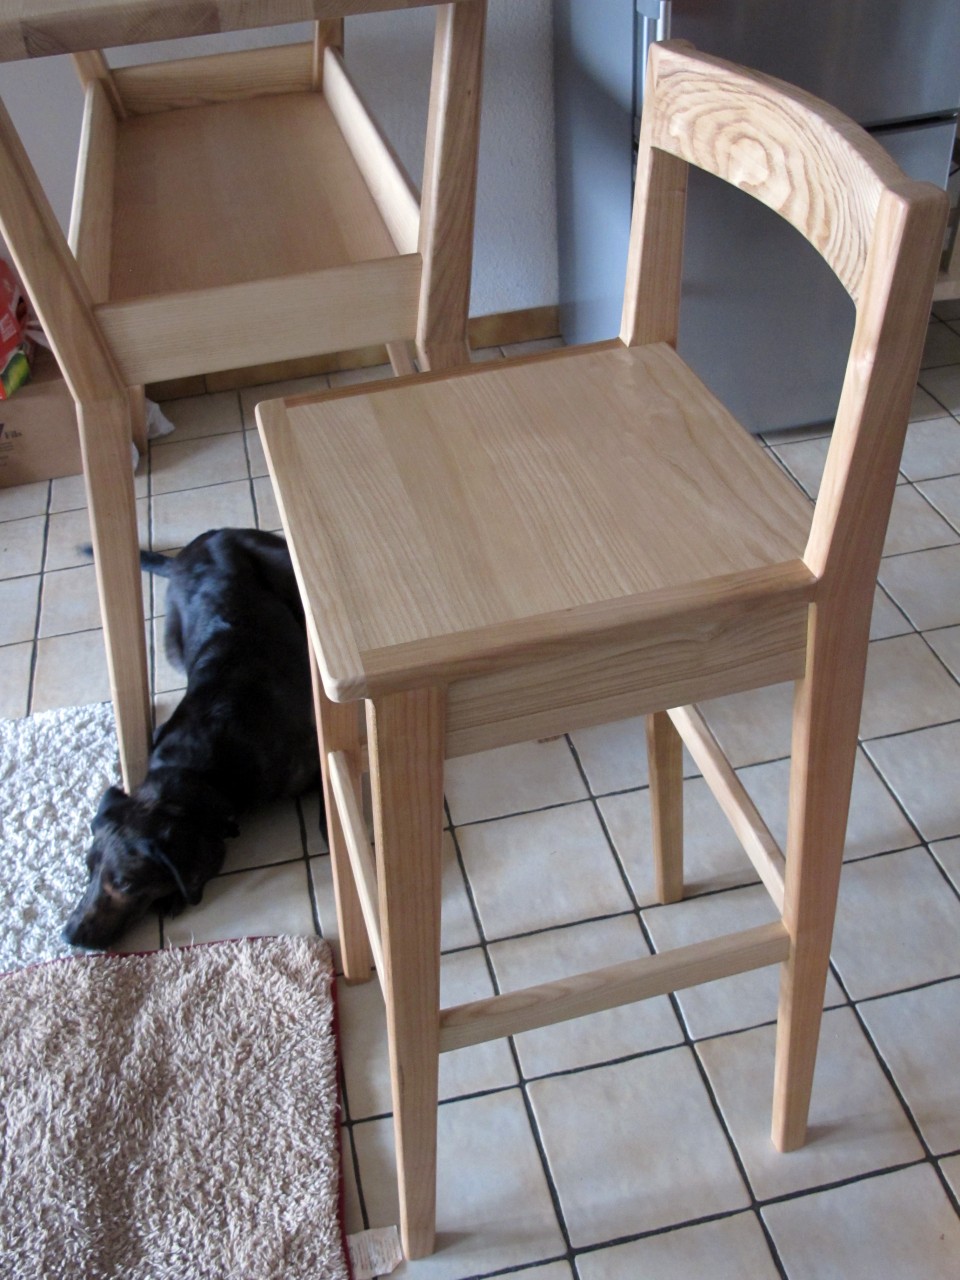 Le dossier incurvé permet de s'asseoir confortablement. 
PS : Lipton (le chien) n'est pas fourni avec.